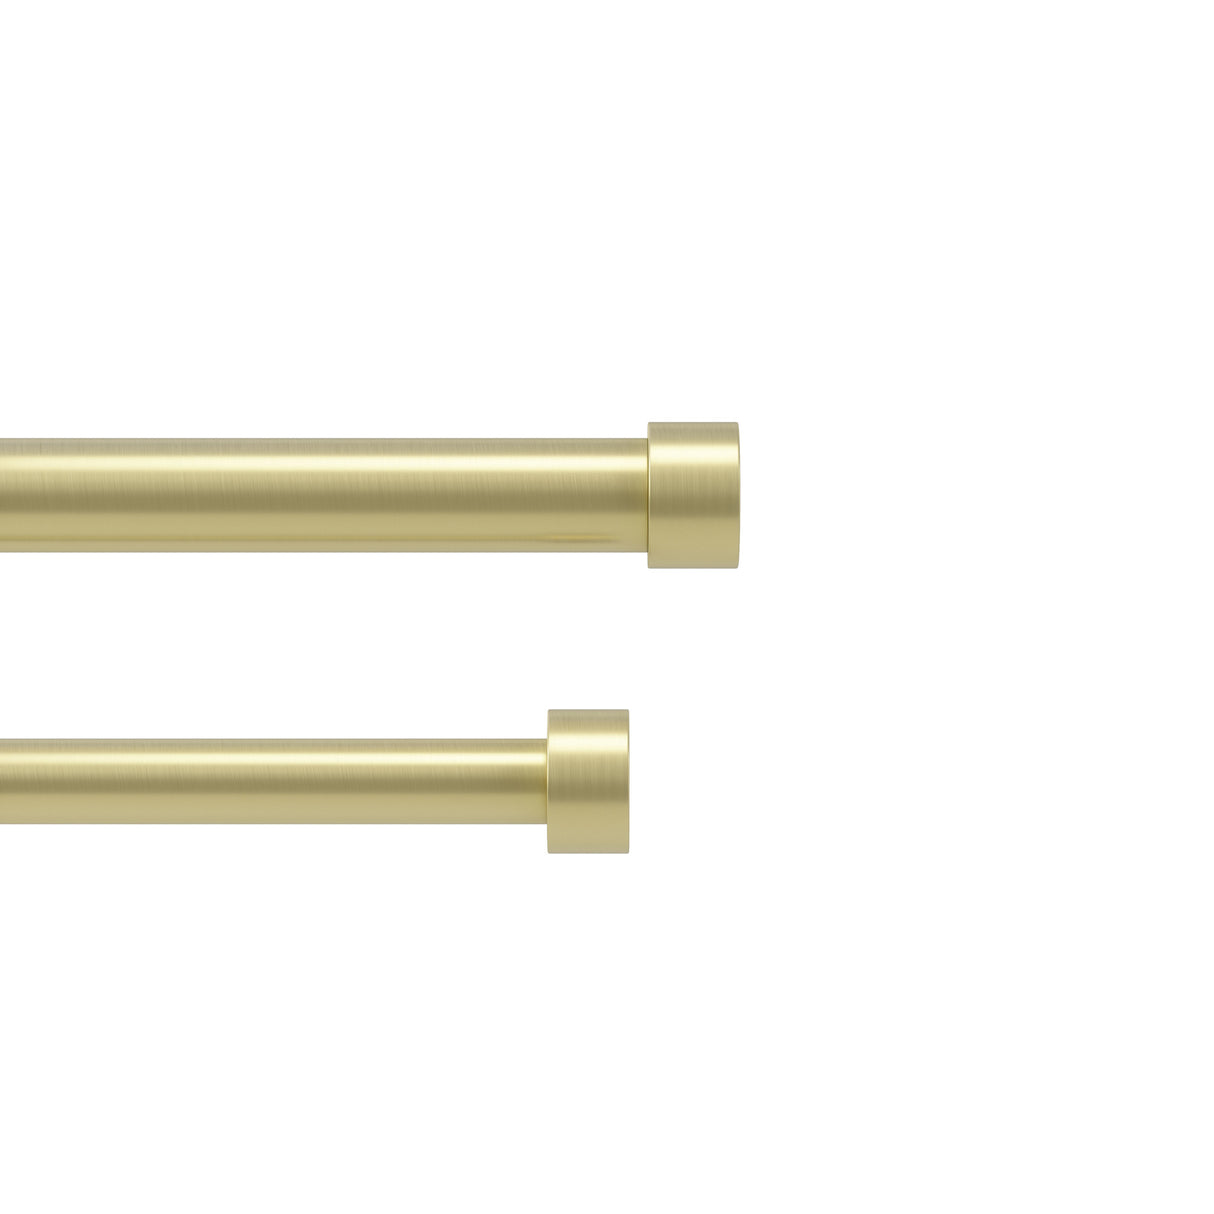 Double Curtain Rods | color: Brass | size: 66-120" (168-305 cm) | diameter: 1" (2.5 cm)